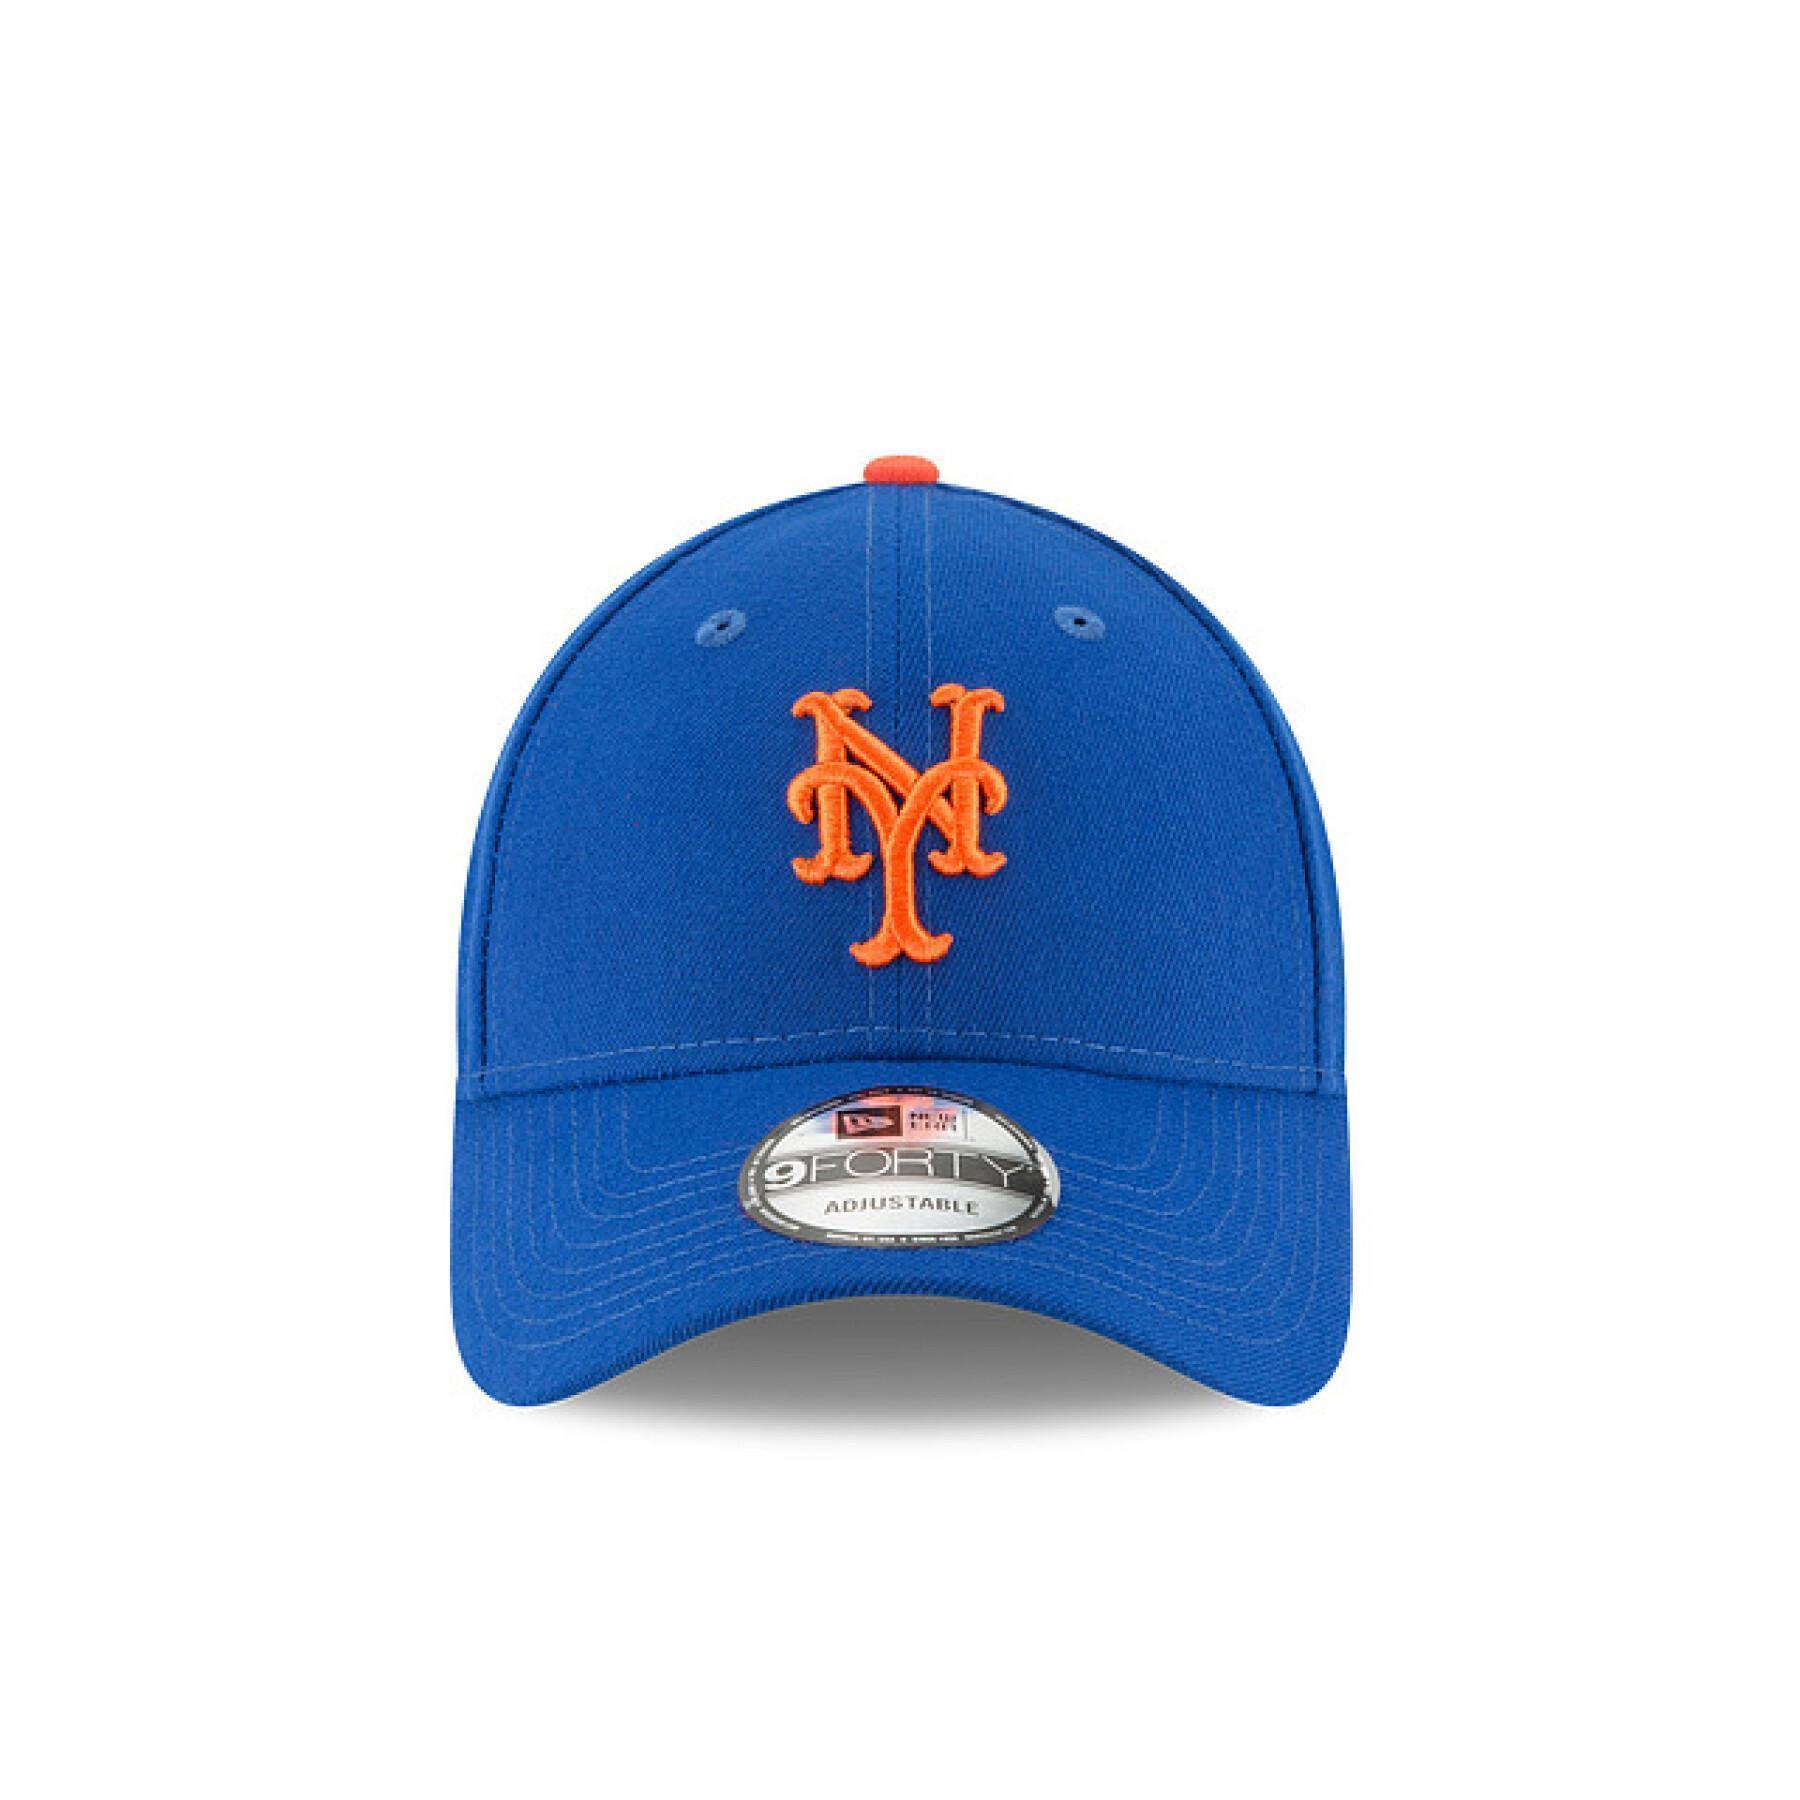 Kappe New York Mets